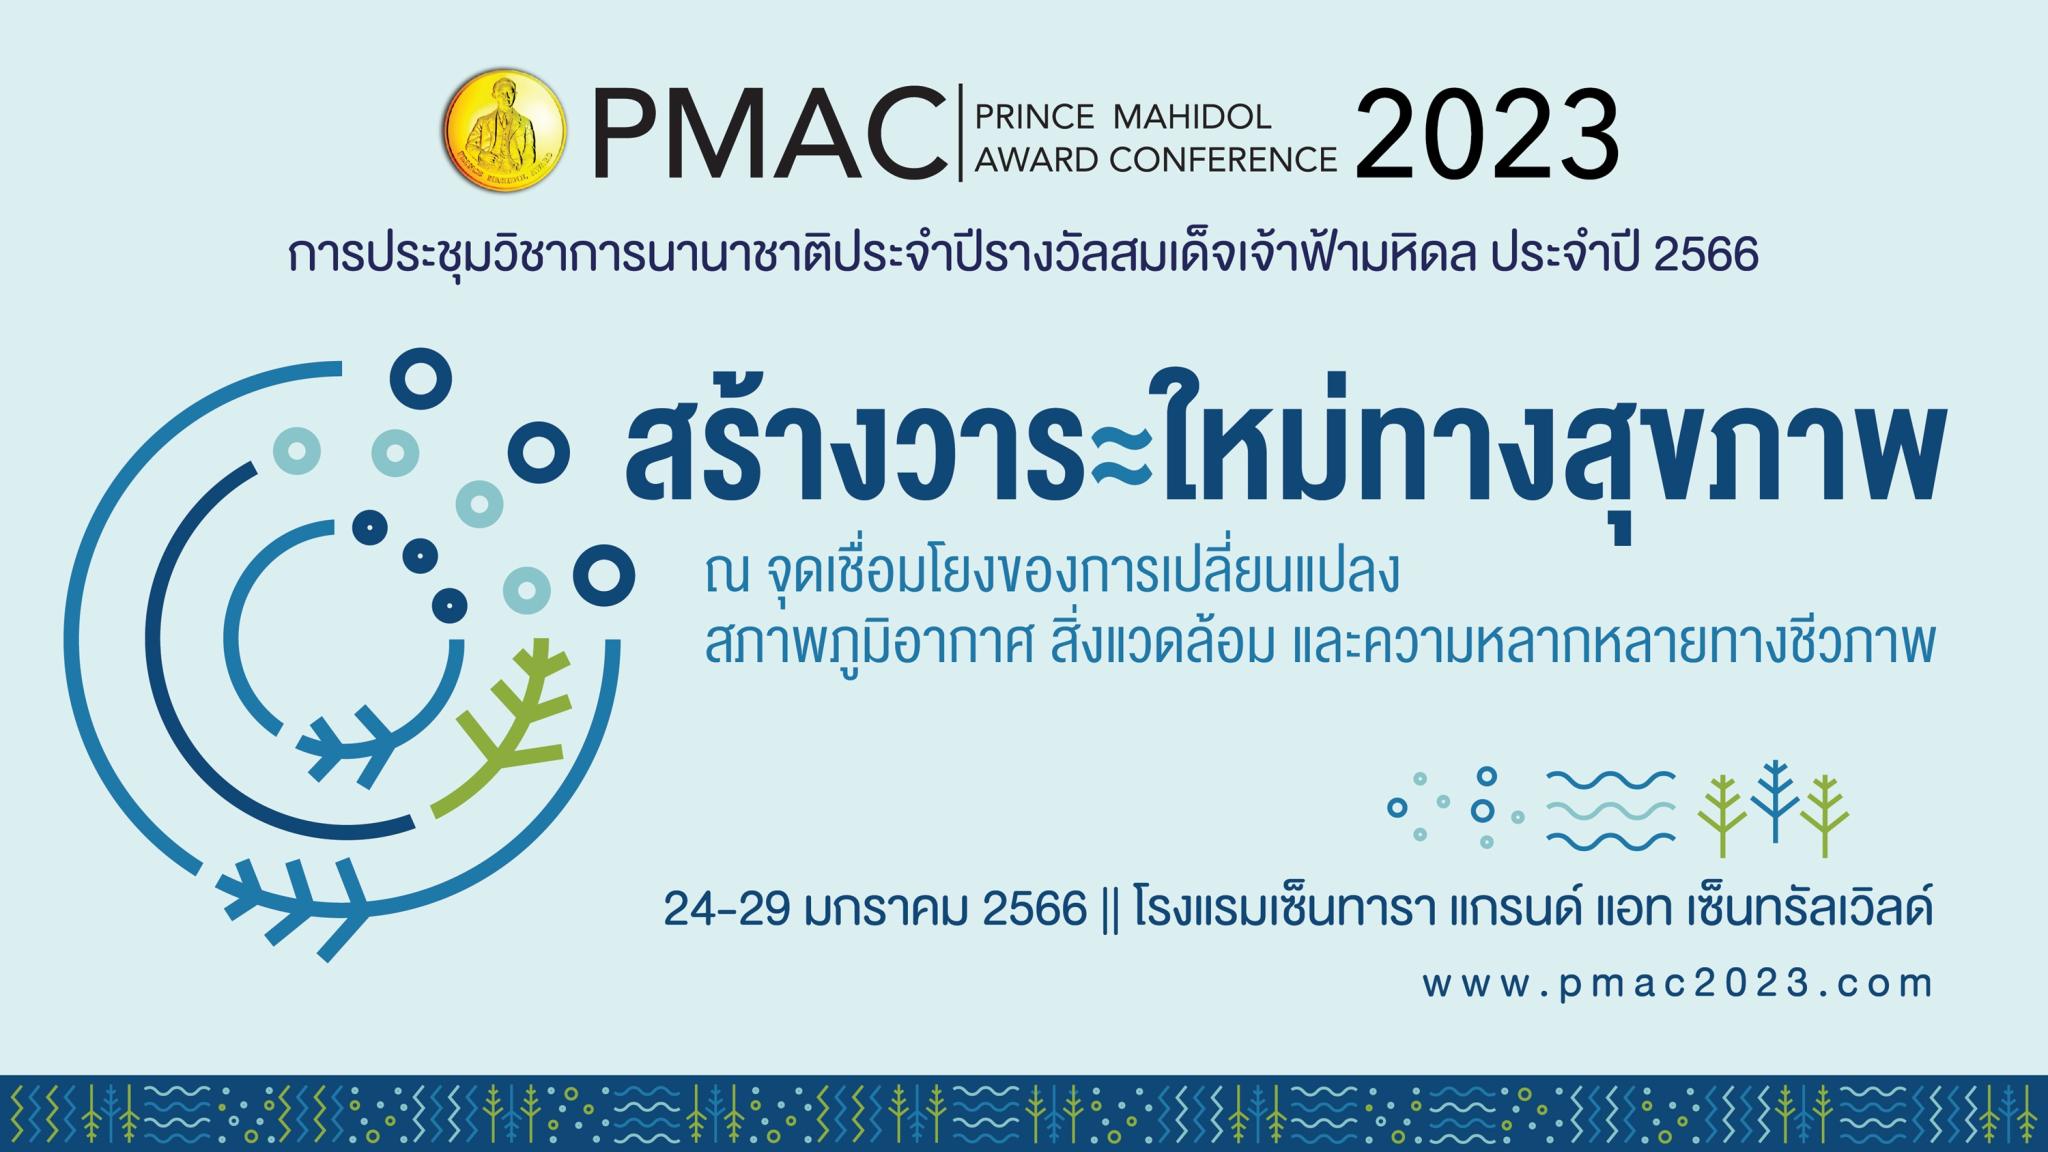 PMAC 2023 สร้างวาระใหม่ทางสุขภาพ ณ จุดเชื่อมโยงของการเปลี่ยนแปลง สภาพภูมิอากาศ สิ่งแวดล้อม และความหลากหลายทางชีวภาพ